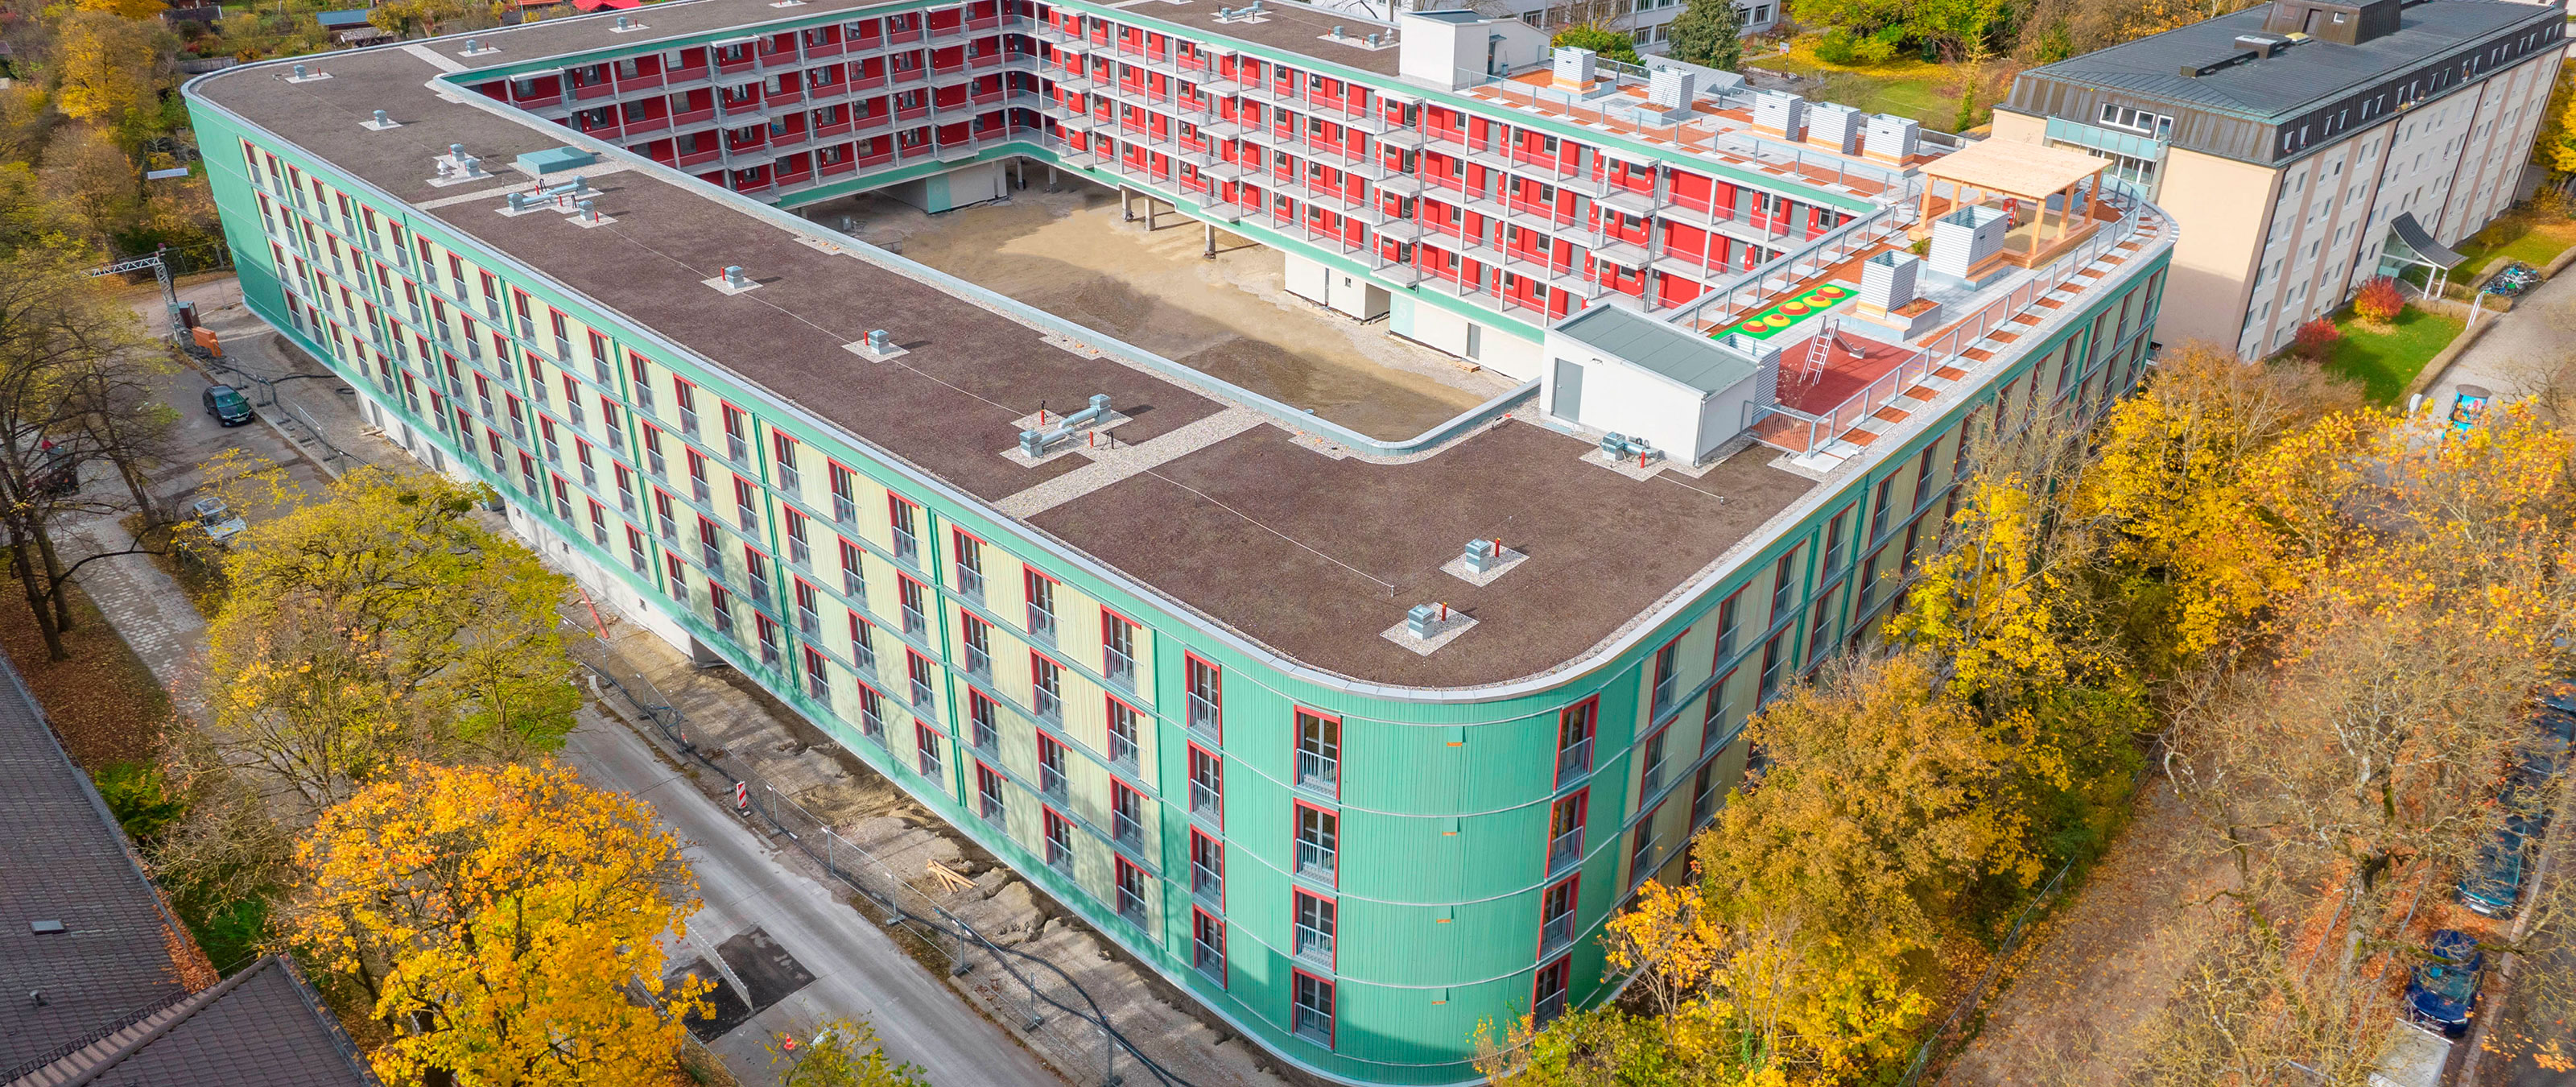 Edificio de varias plantas en madera el Dantebad en Múnich